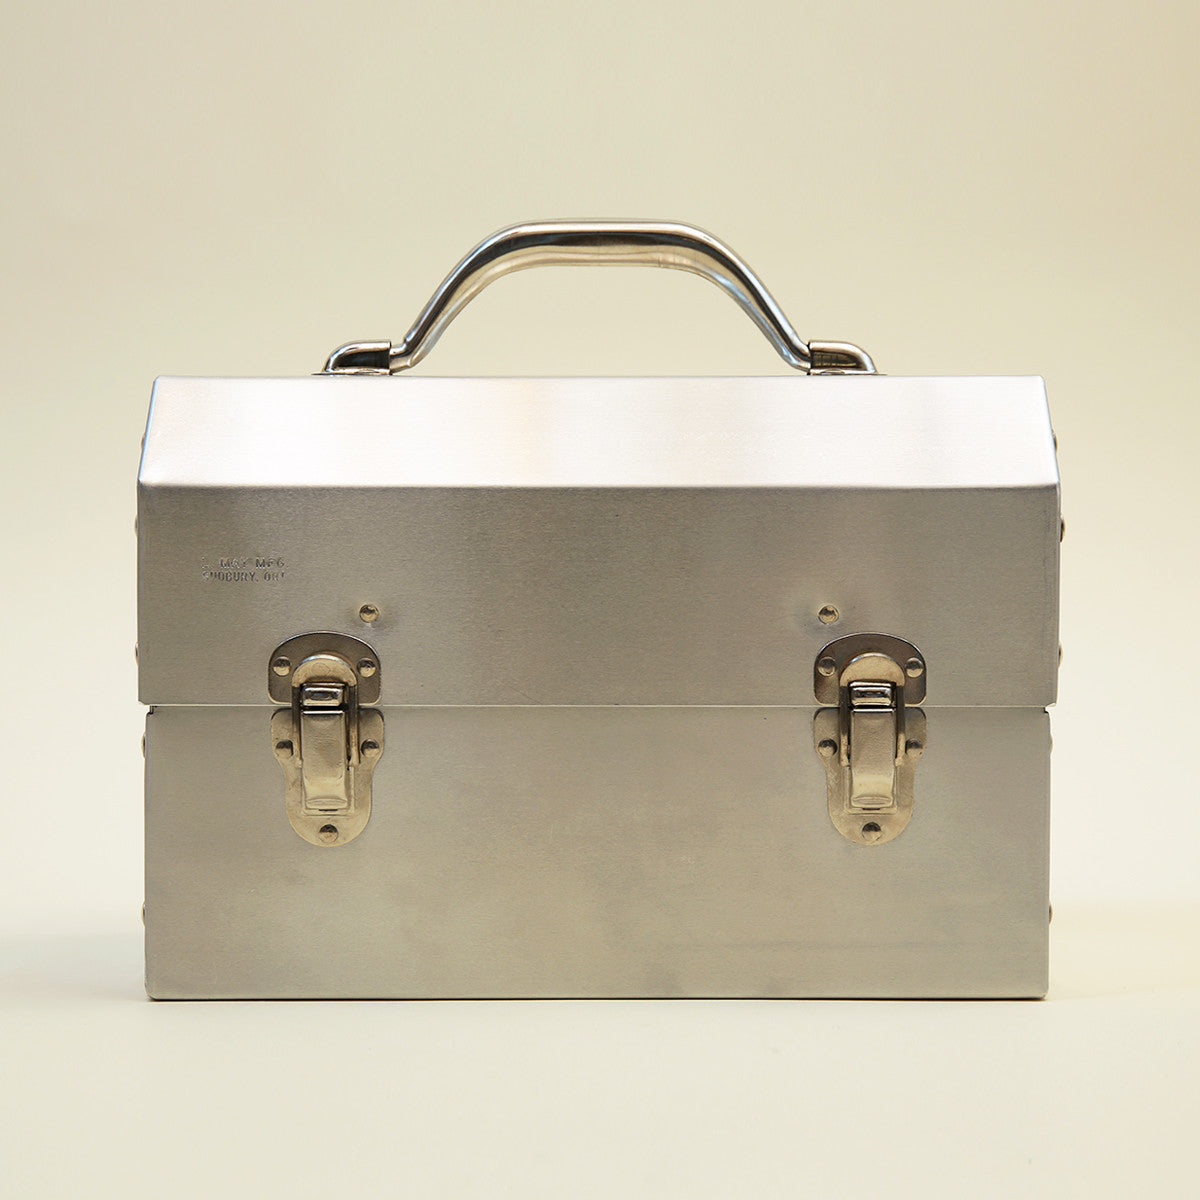 Aluminum Bento Box